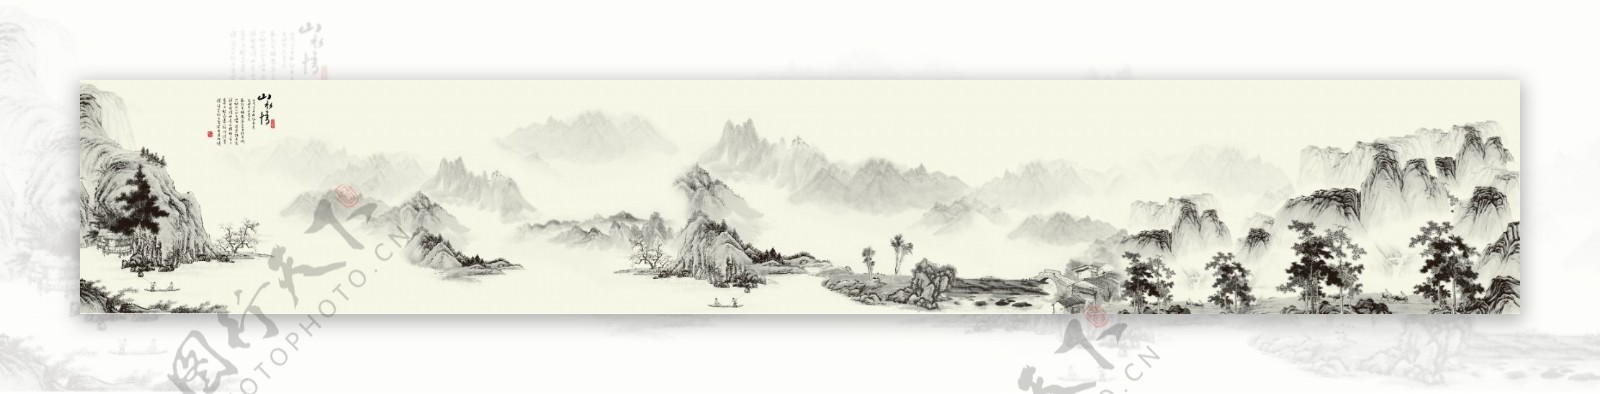 中式风格山水画横幅